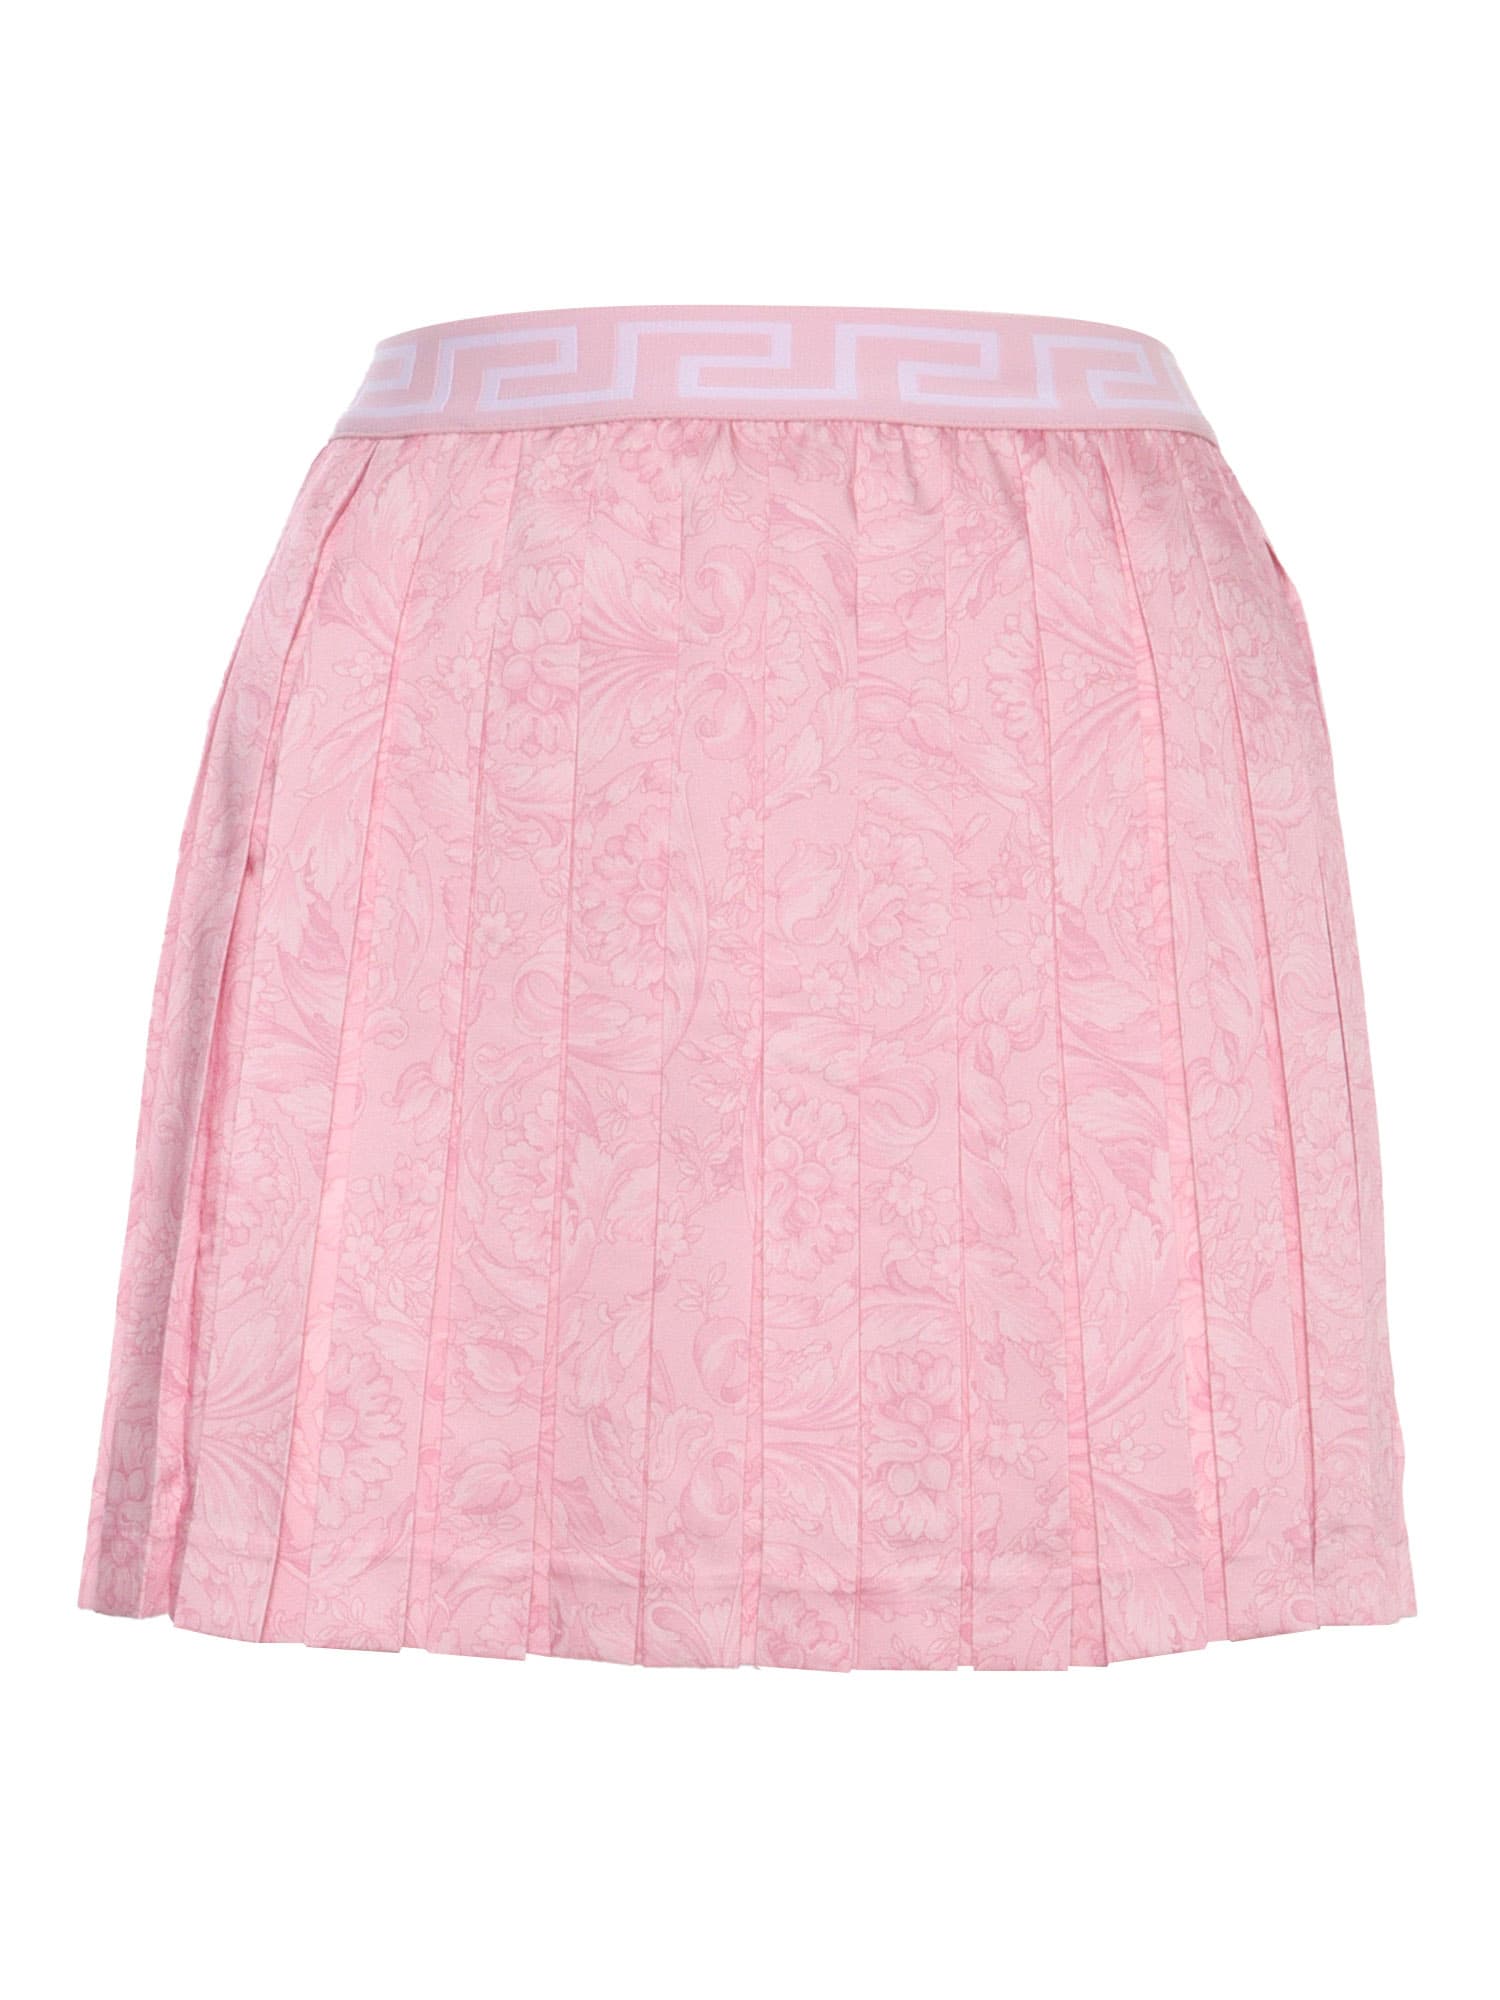 Versace Kids' Pink Barocco Skirt